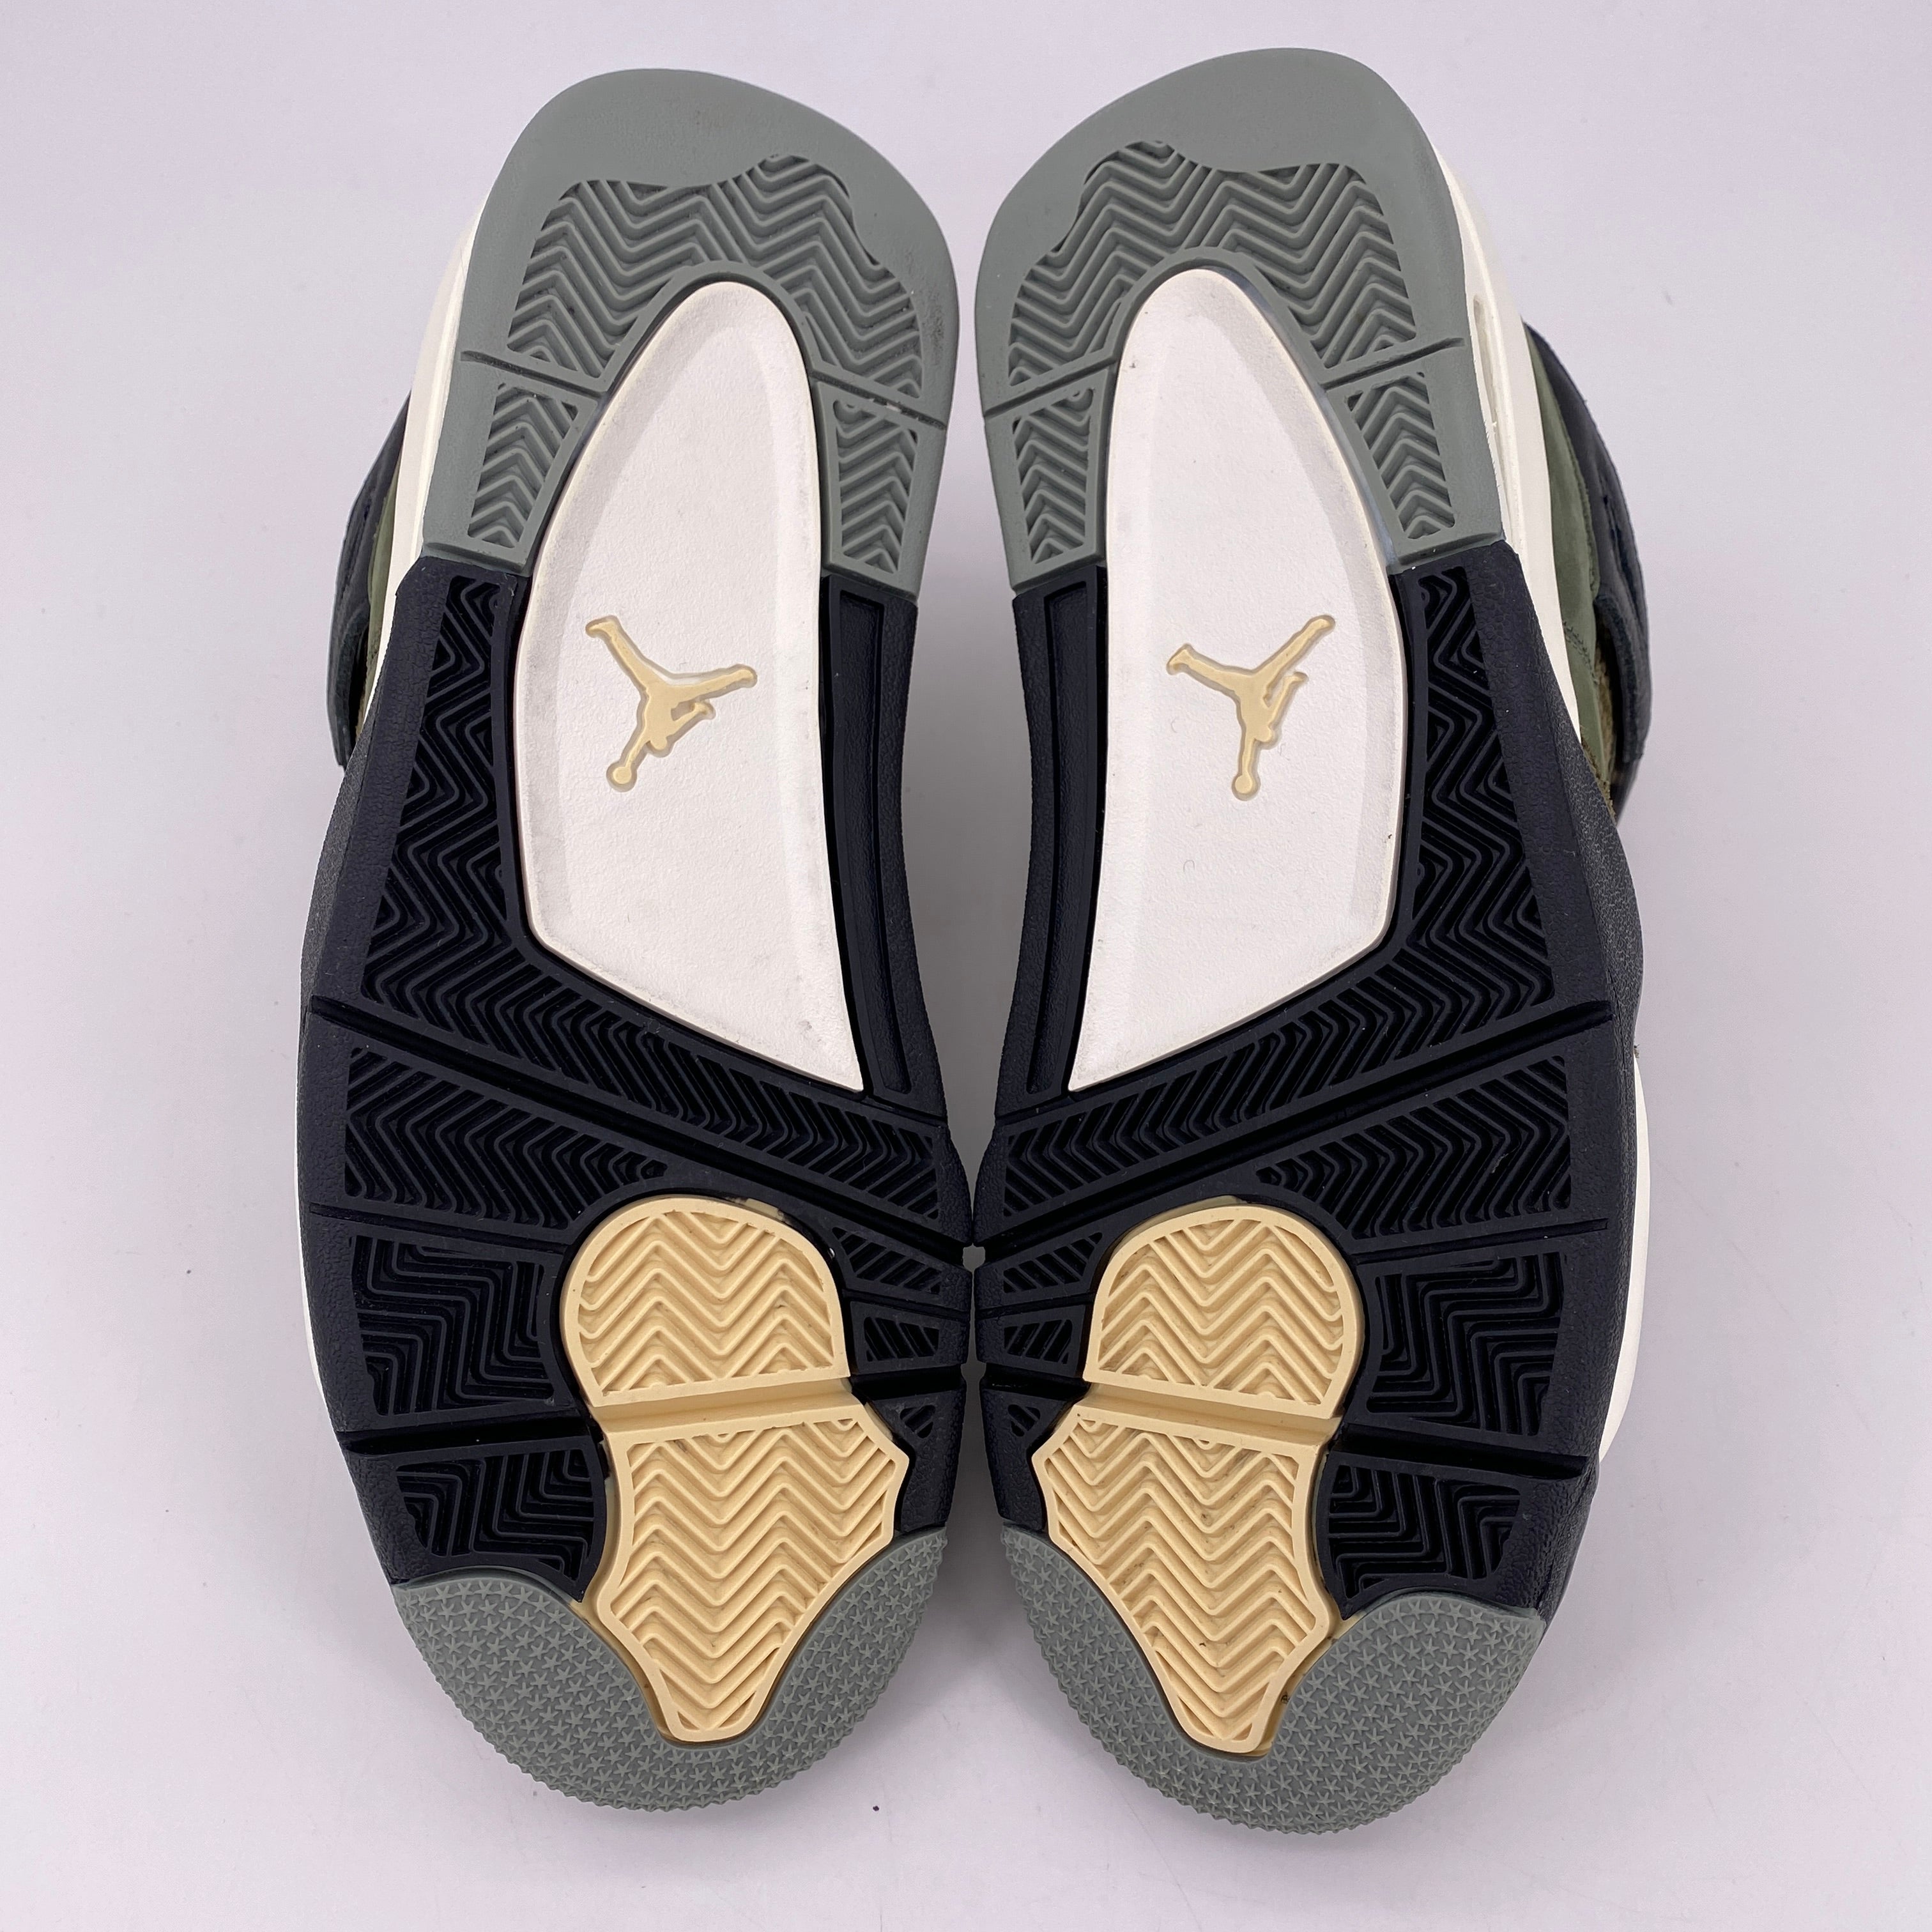 Air Jordan 4 Retro SE Craft "Medium Olive" 2023 Used Size 8.5